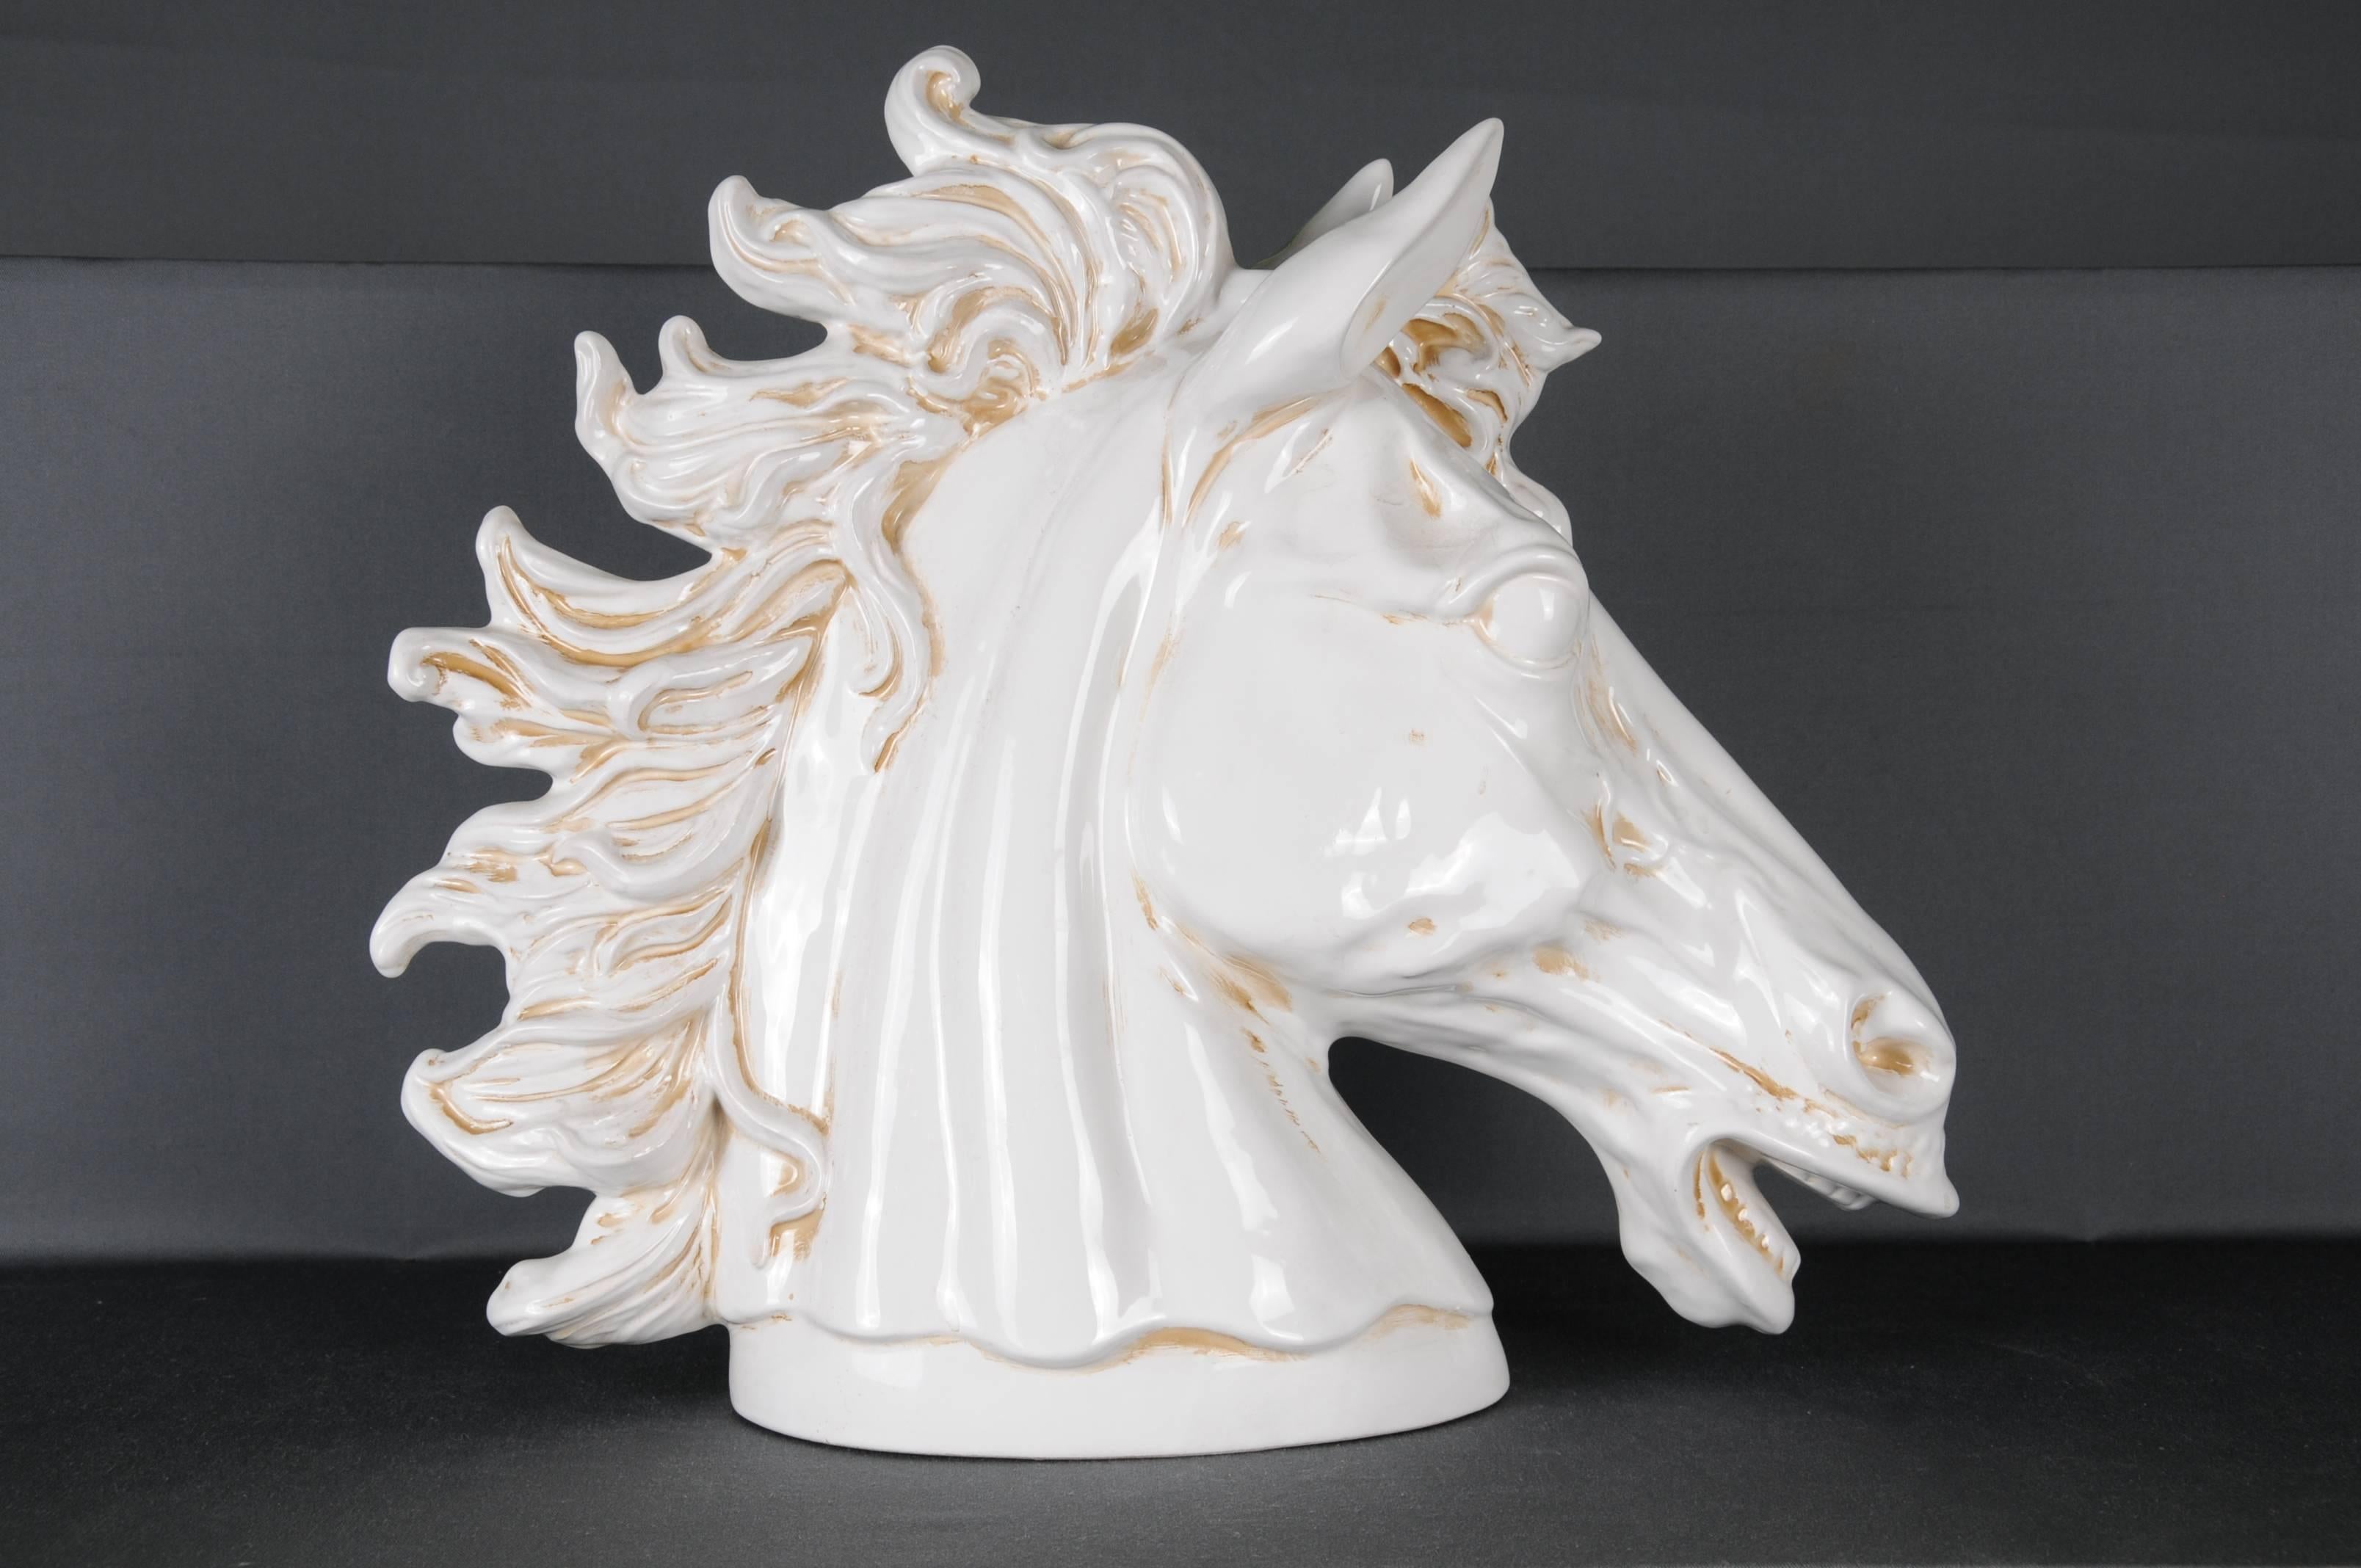 Äußerst dekorativer Pferdekopf mit eindrucksvoller Mimik. 20.Jhd. Keramiken.
Sehr feine und detaillierte Verarbeitung. Unbeschädigter Zustand.

(Q-28).